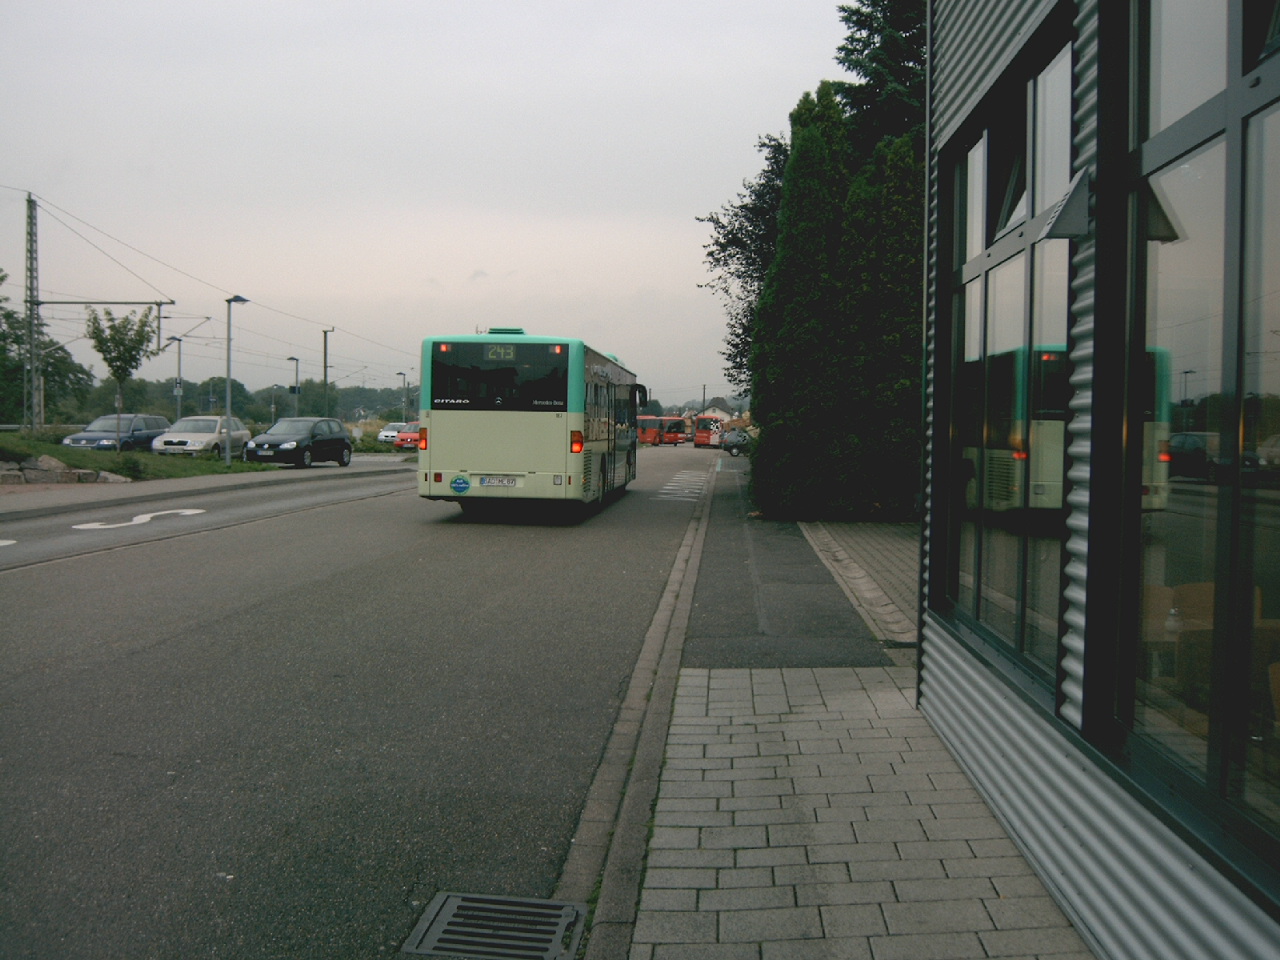 243 Schnellbus